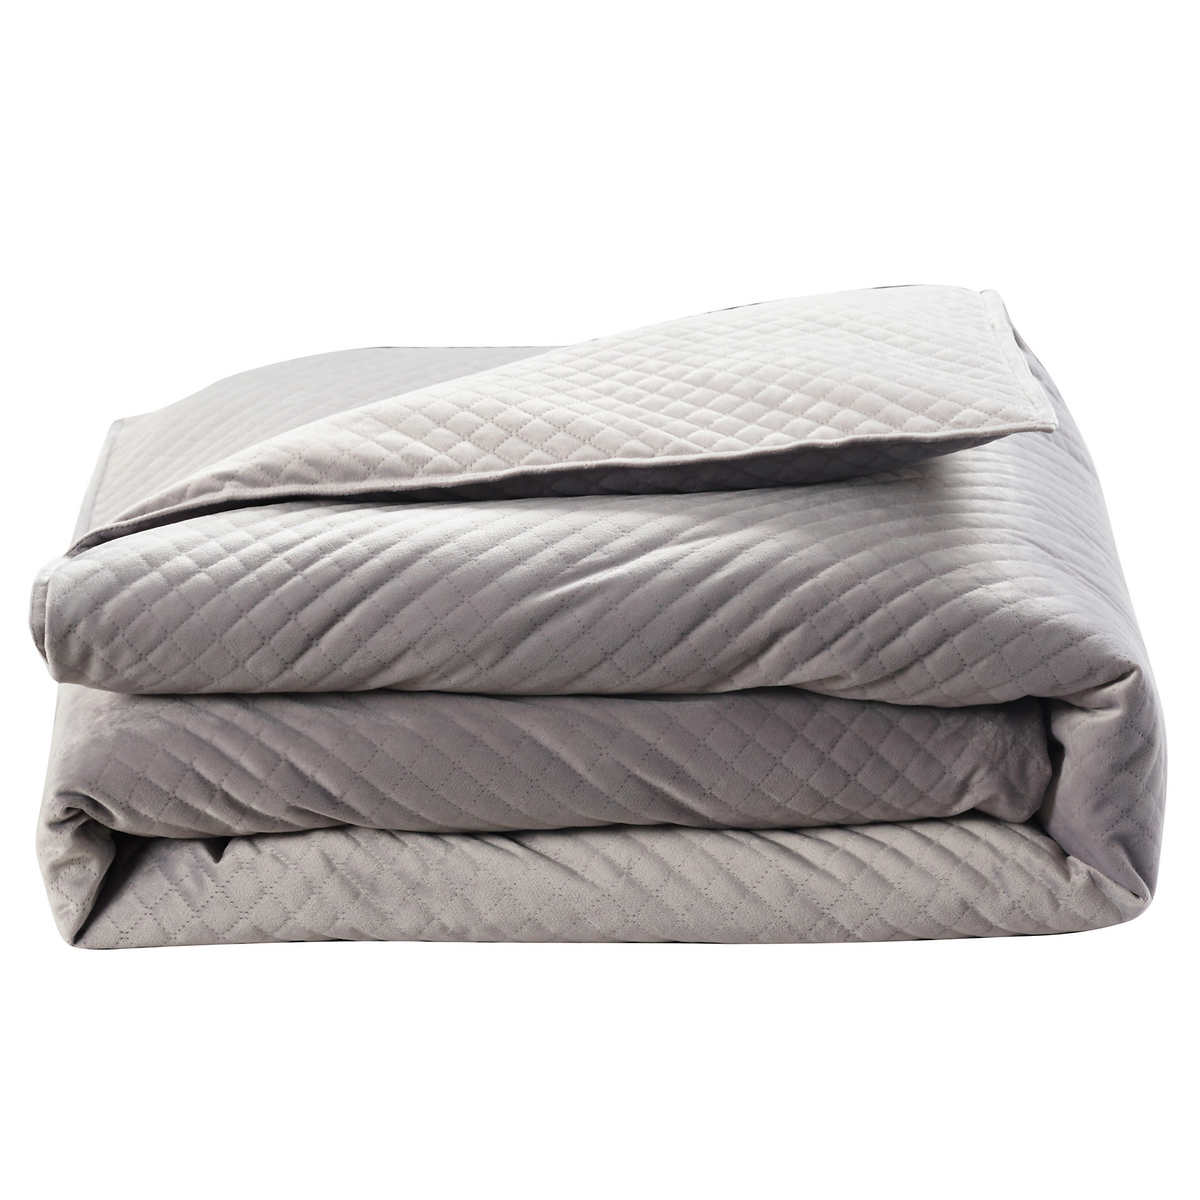 Costco Members: 20-lb Premium Weighted Blanket - Slickdeals.net